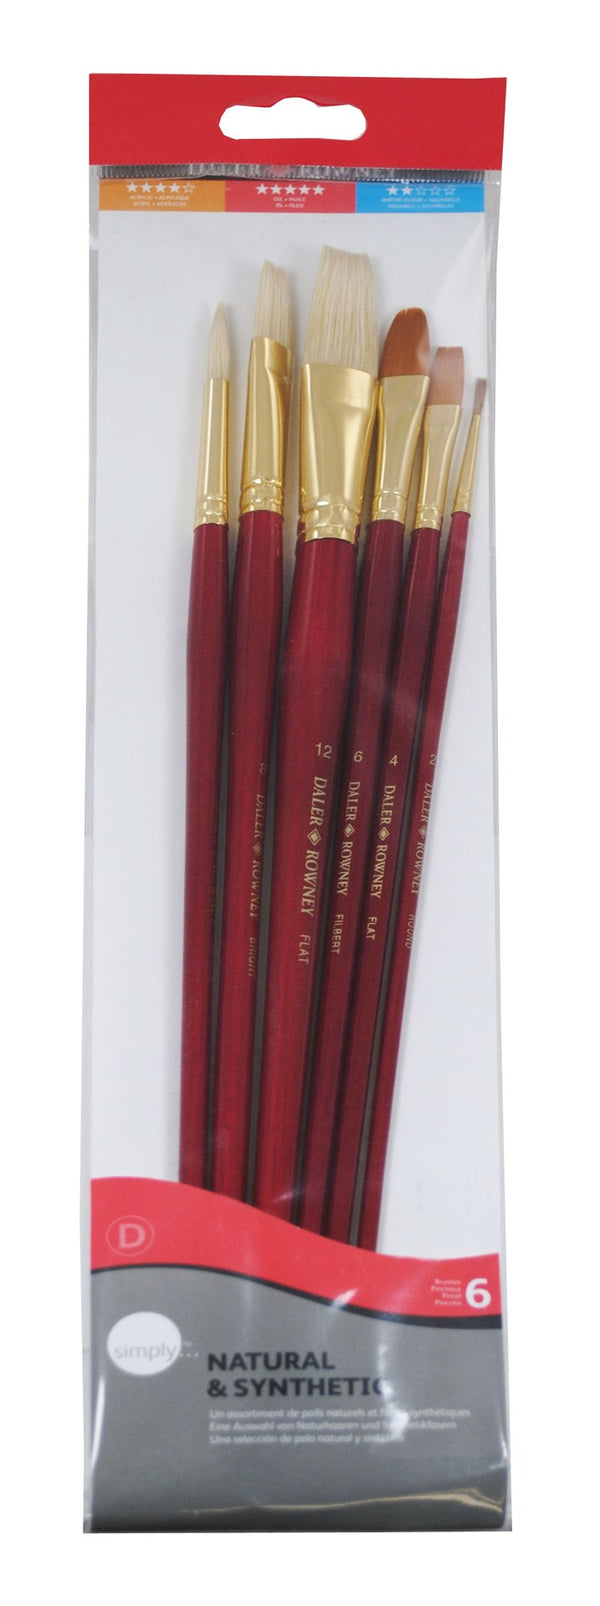 Daler Rowney Simply Sable Bristle & Gold Taklon Art Paint Brush Set 6 Pieces